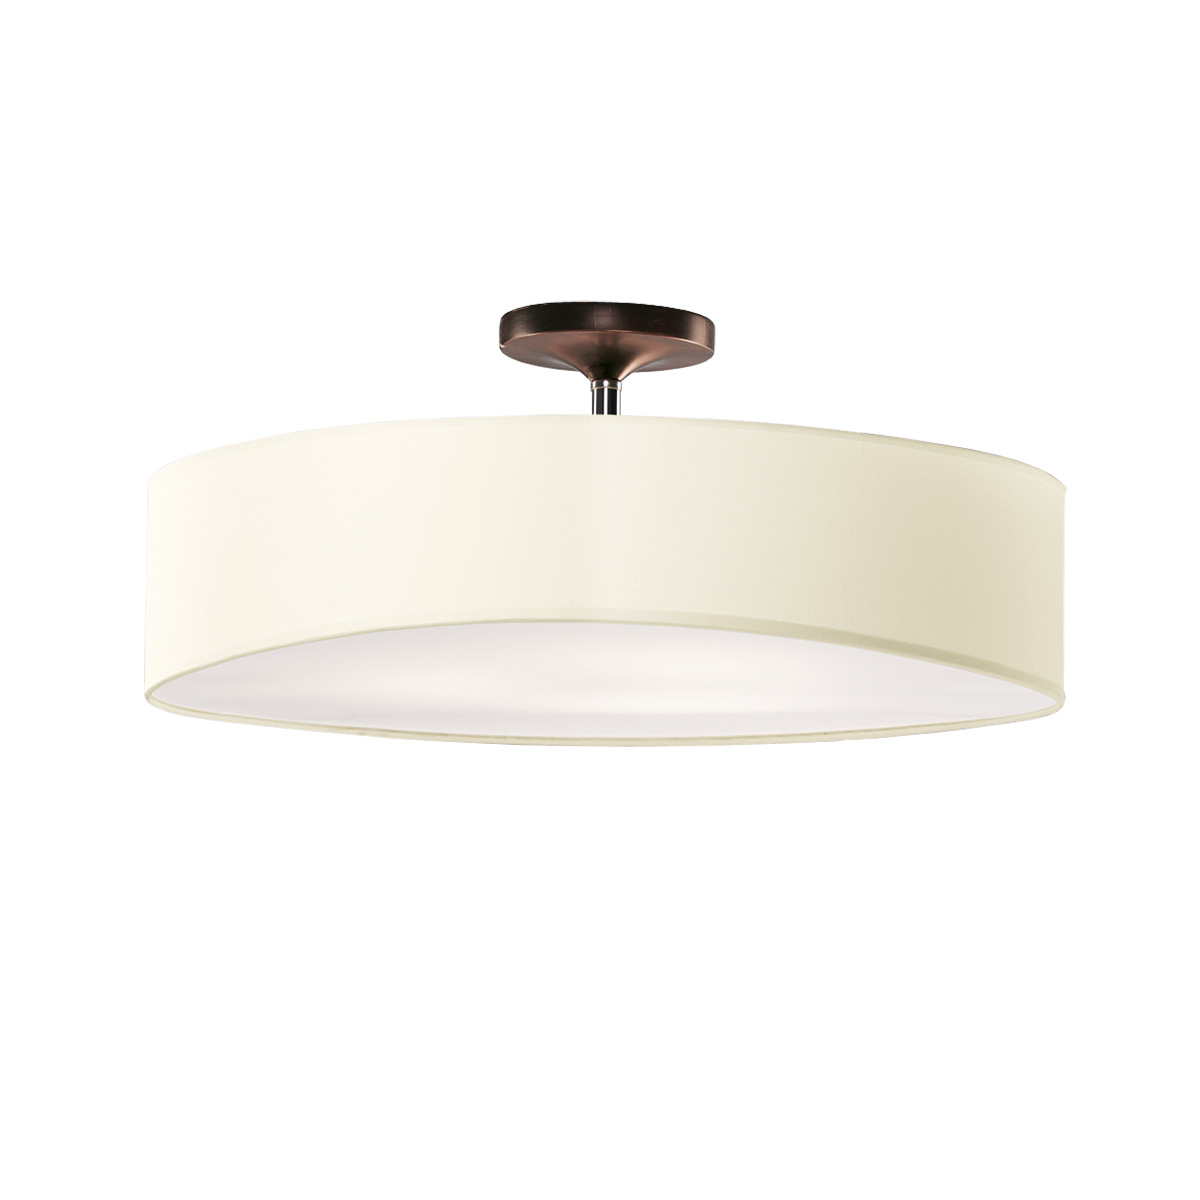 Φωτιστικό ημιοροφής με μπεζ καπέλο DISCO ZEN ceiling lamp with beige shade